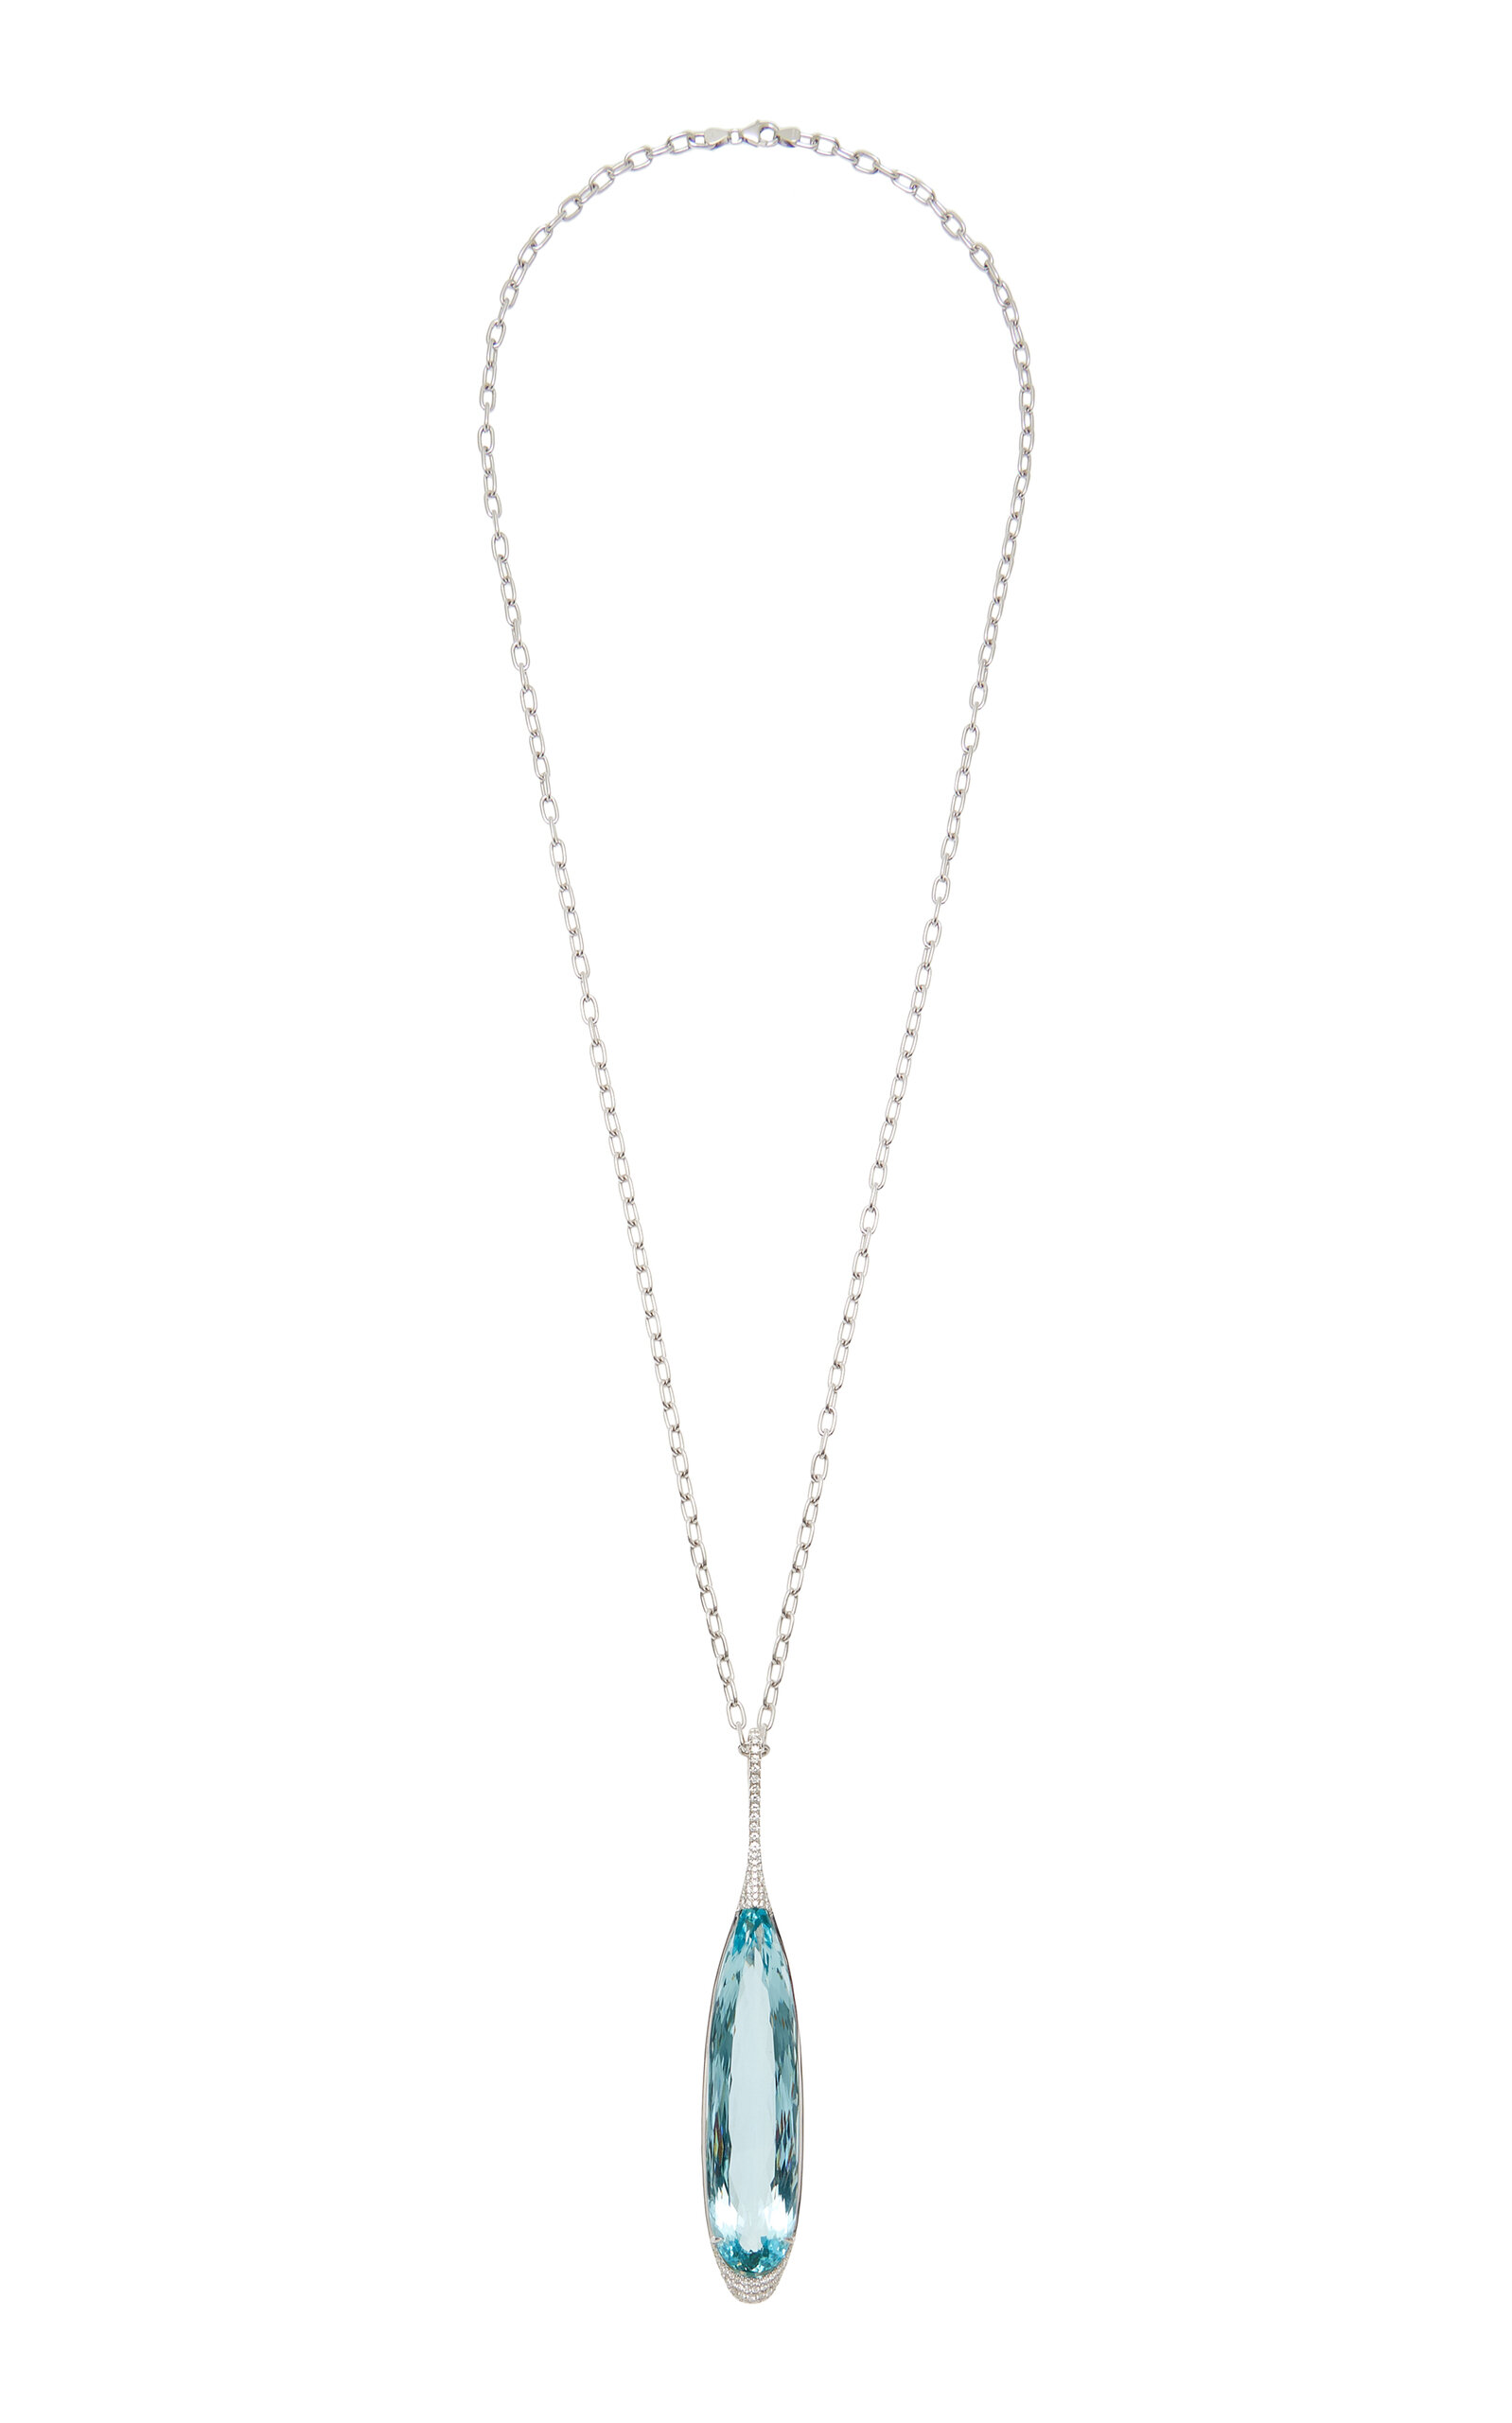 18K White Gold Aquamarine and Diamond Pendant Necklace